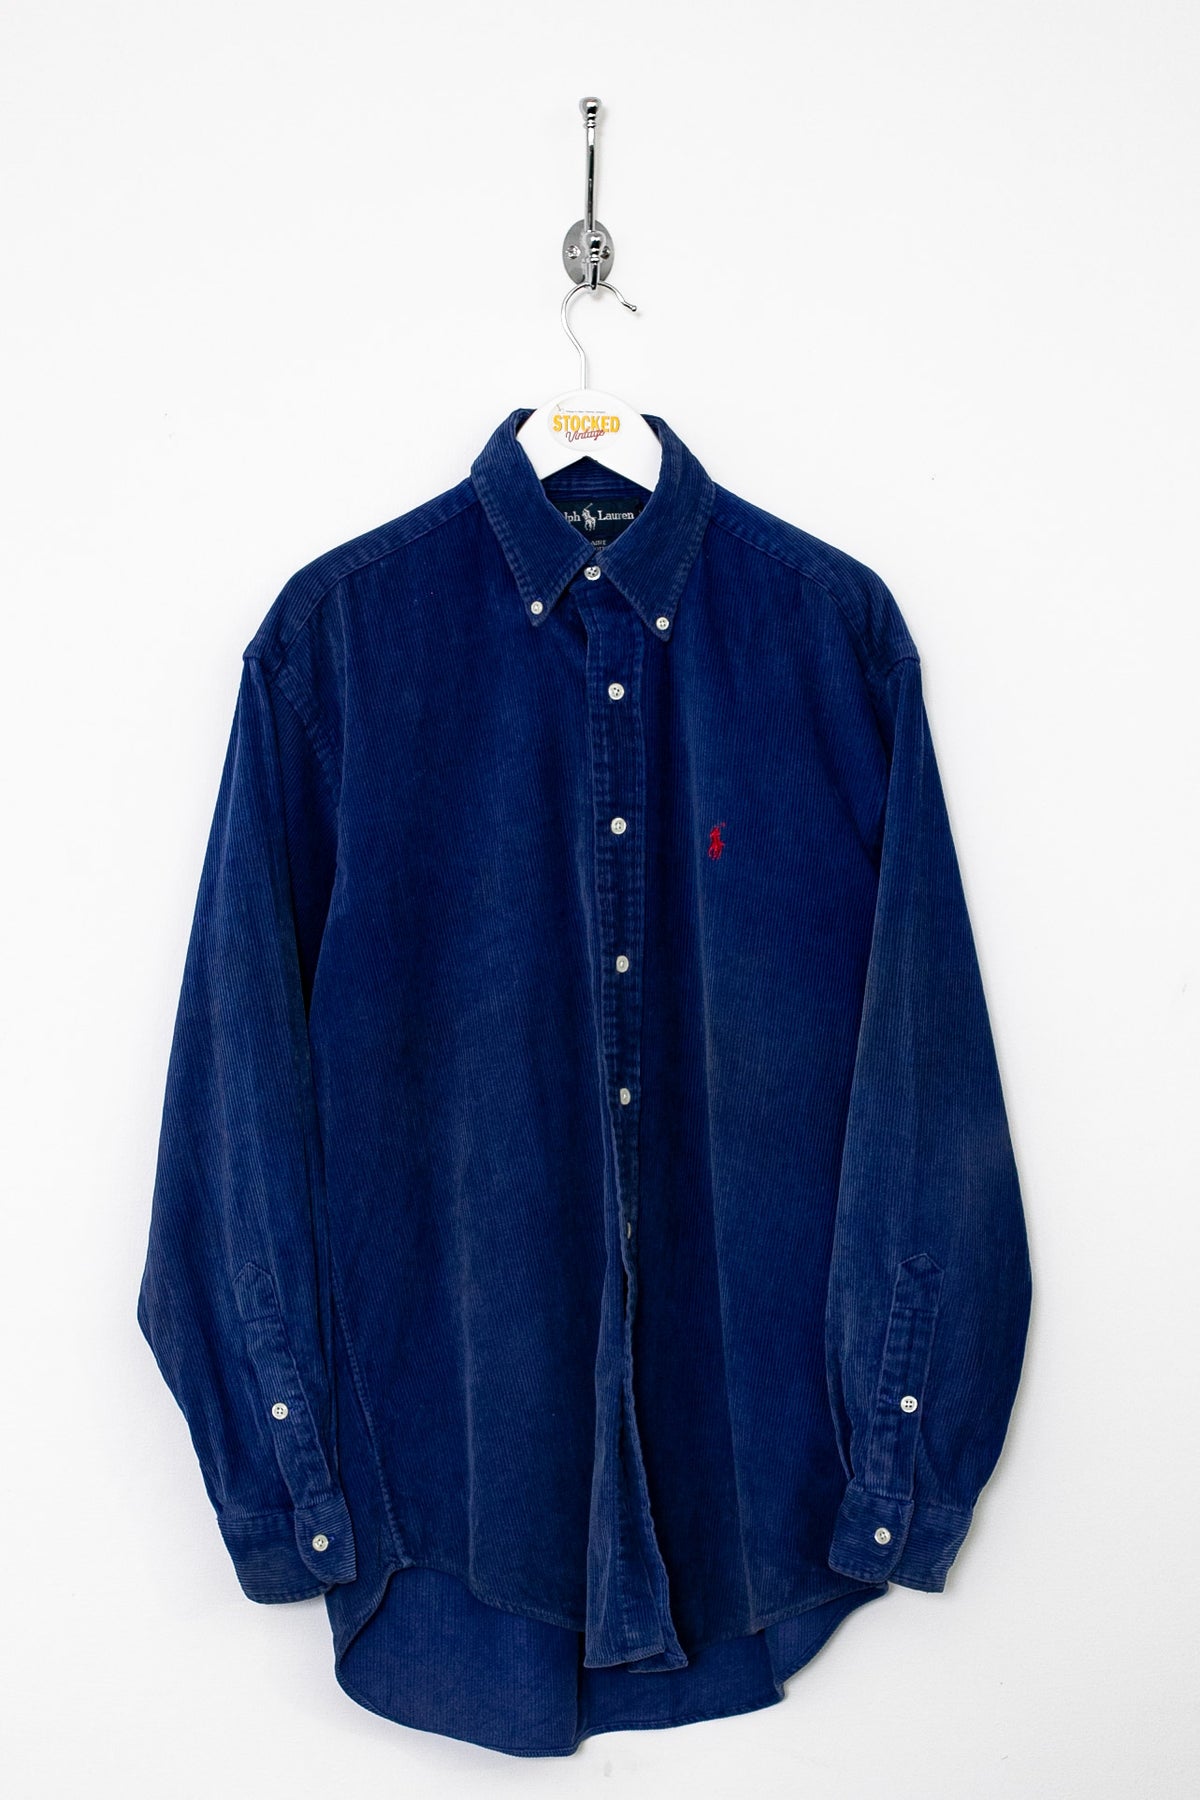 90s Ralph Lauren Corduroy Shirt (S)